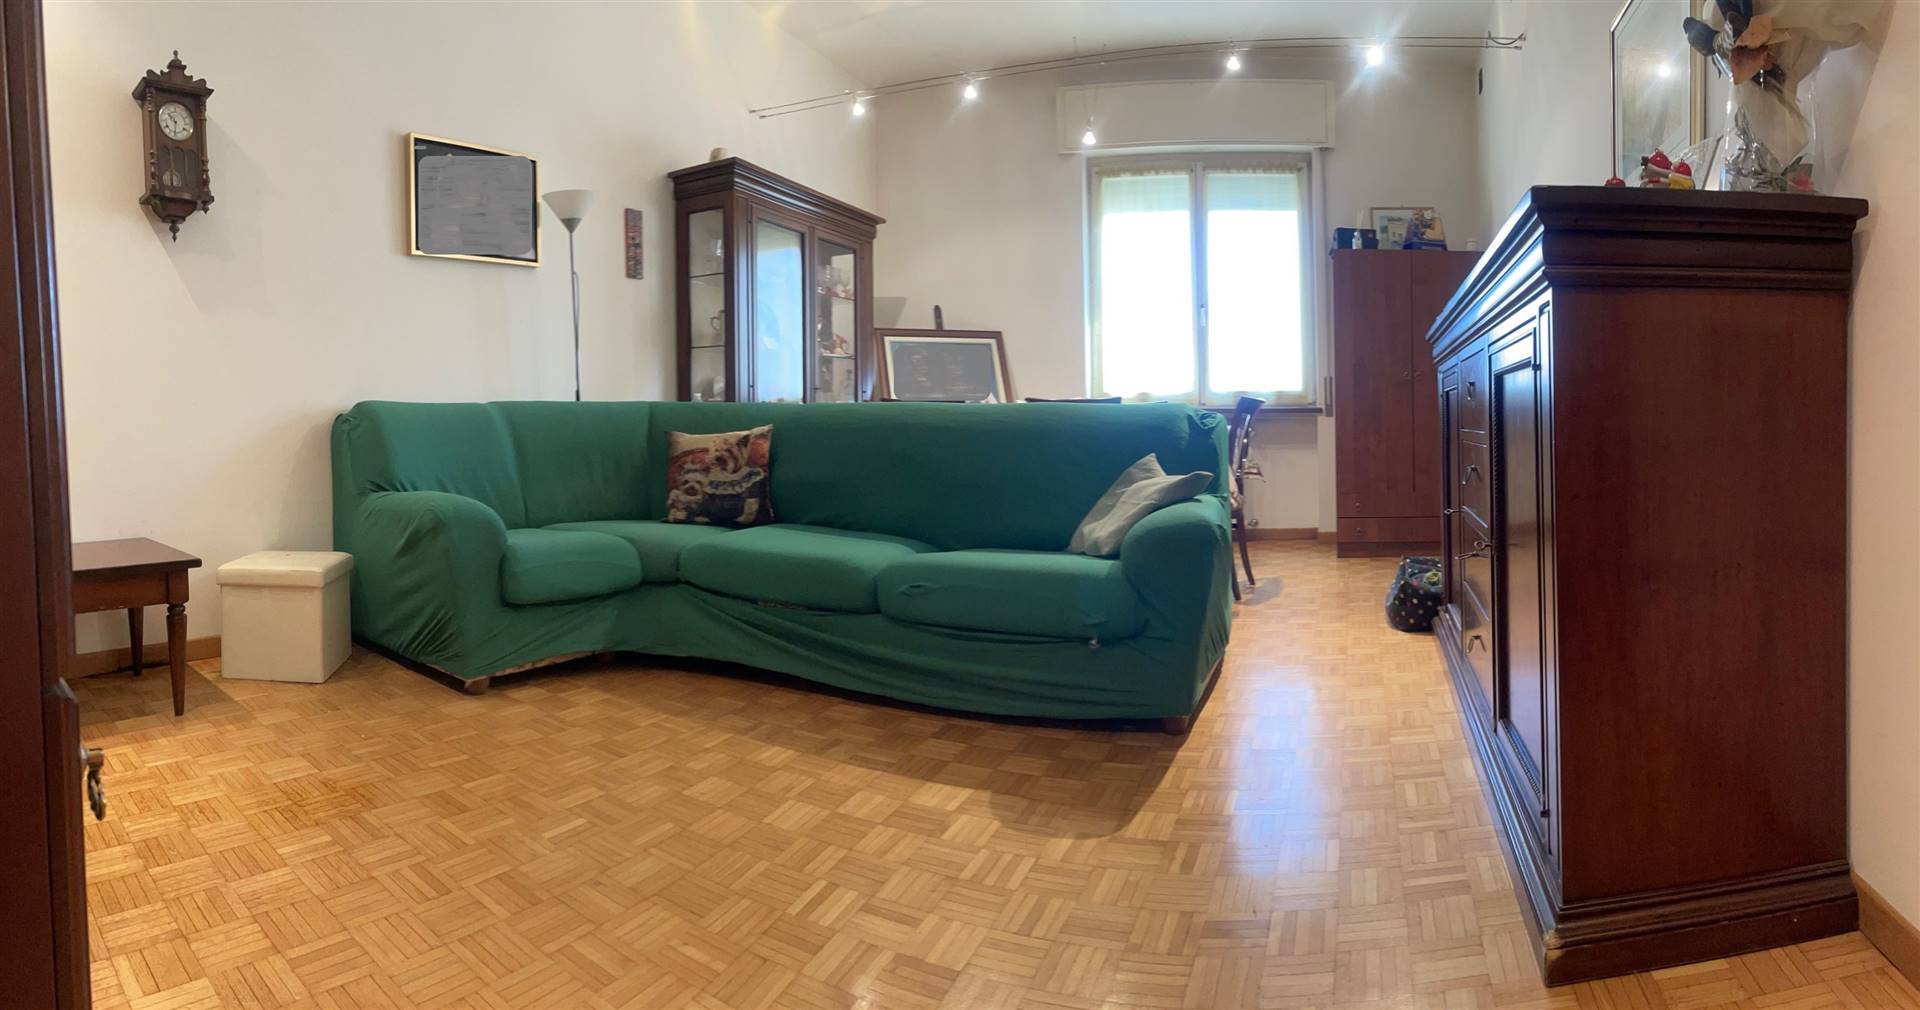 Appartamento in vendita a Mantova, 4 locali, zona Zona: Centro storico, prezzo € 174.000 | CambioCasa.it